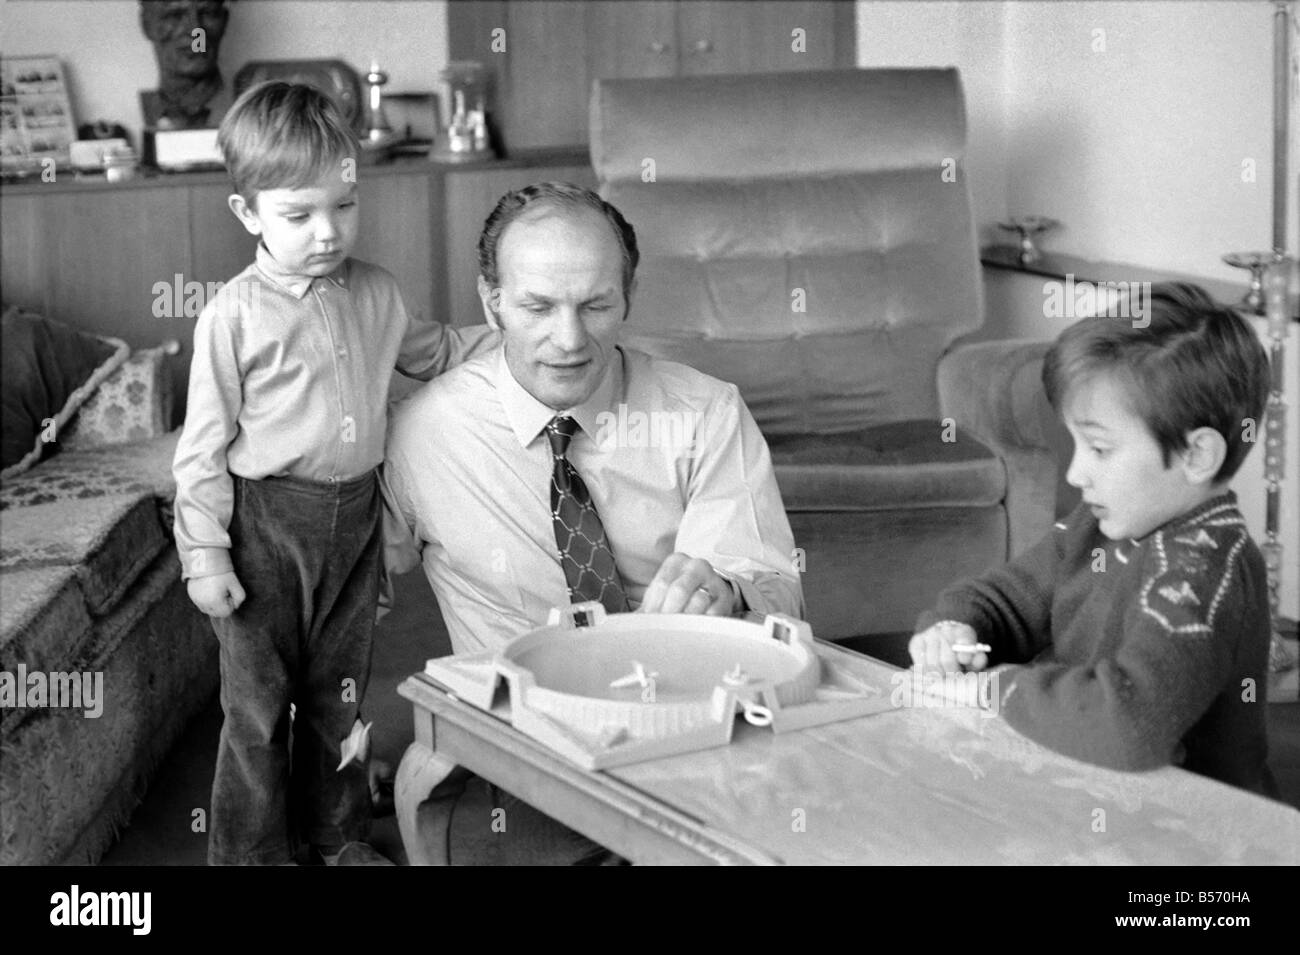 Le boxeur britannique Henry Cooper photographiée avec fils Henry Marco âgés de 10 (à droite) et 3 ans John Pietro jouant avec un jeu de toupies à Wembley son accueil. Décembre 1970 ;70-11690-003 Banque D'Images